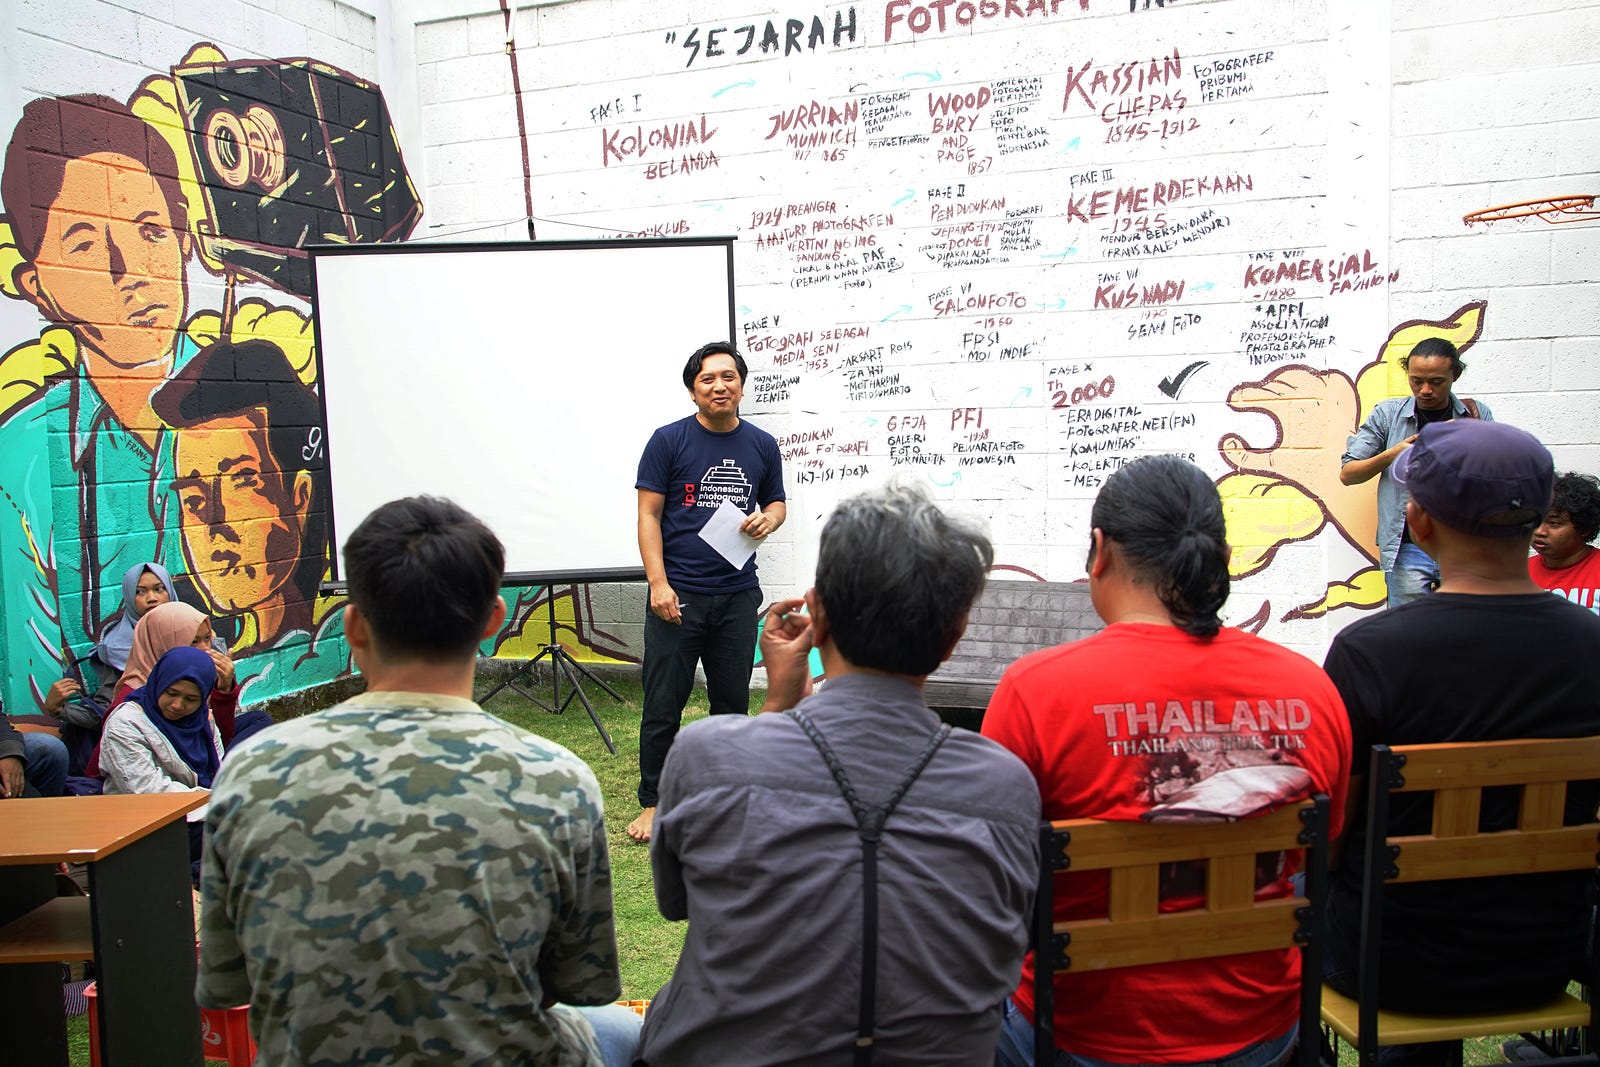 Perjalanan Fotografi Indonesia Dalam Mural Moselo